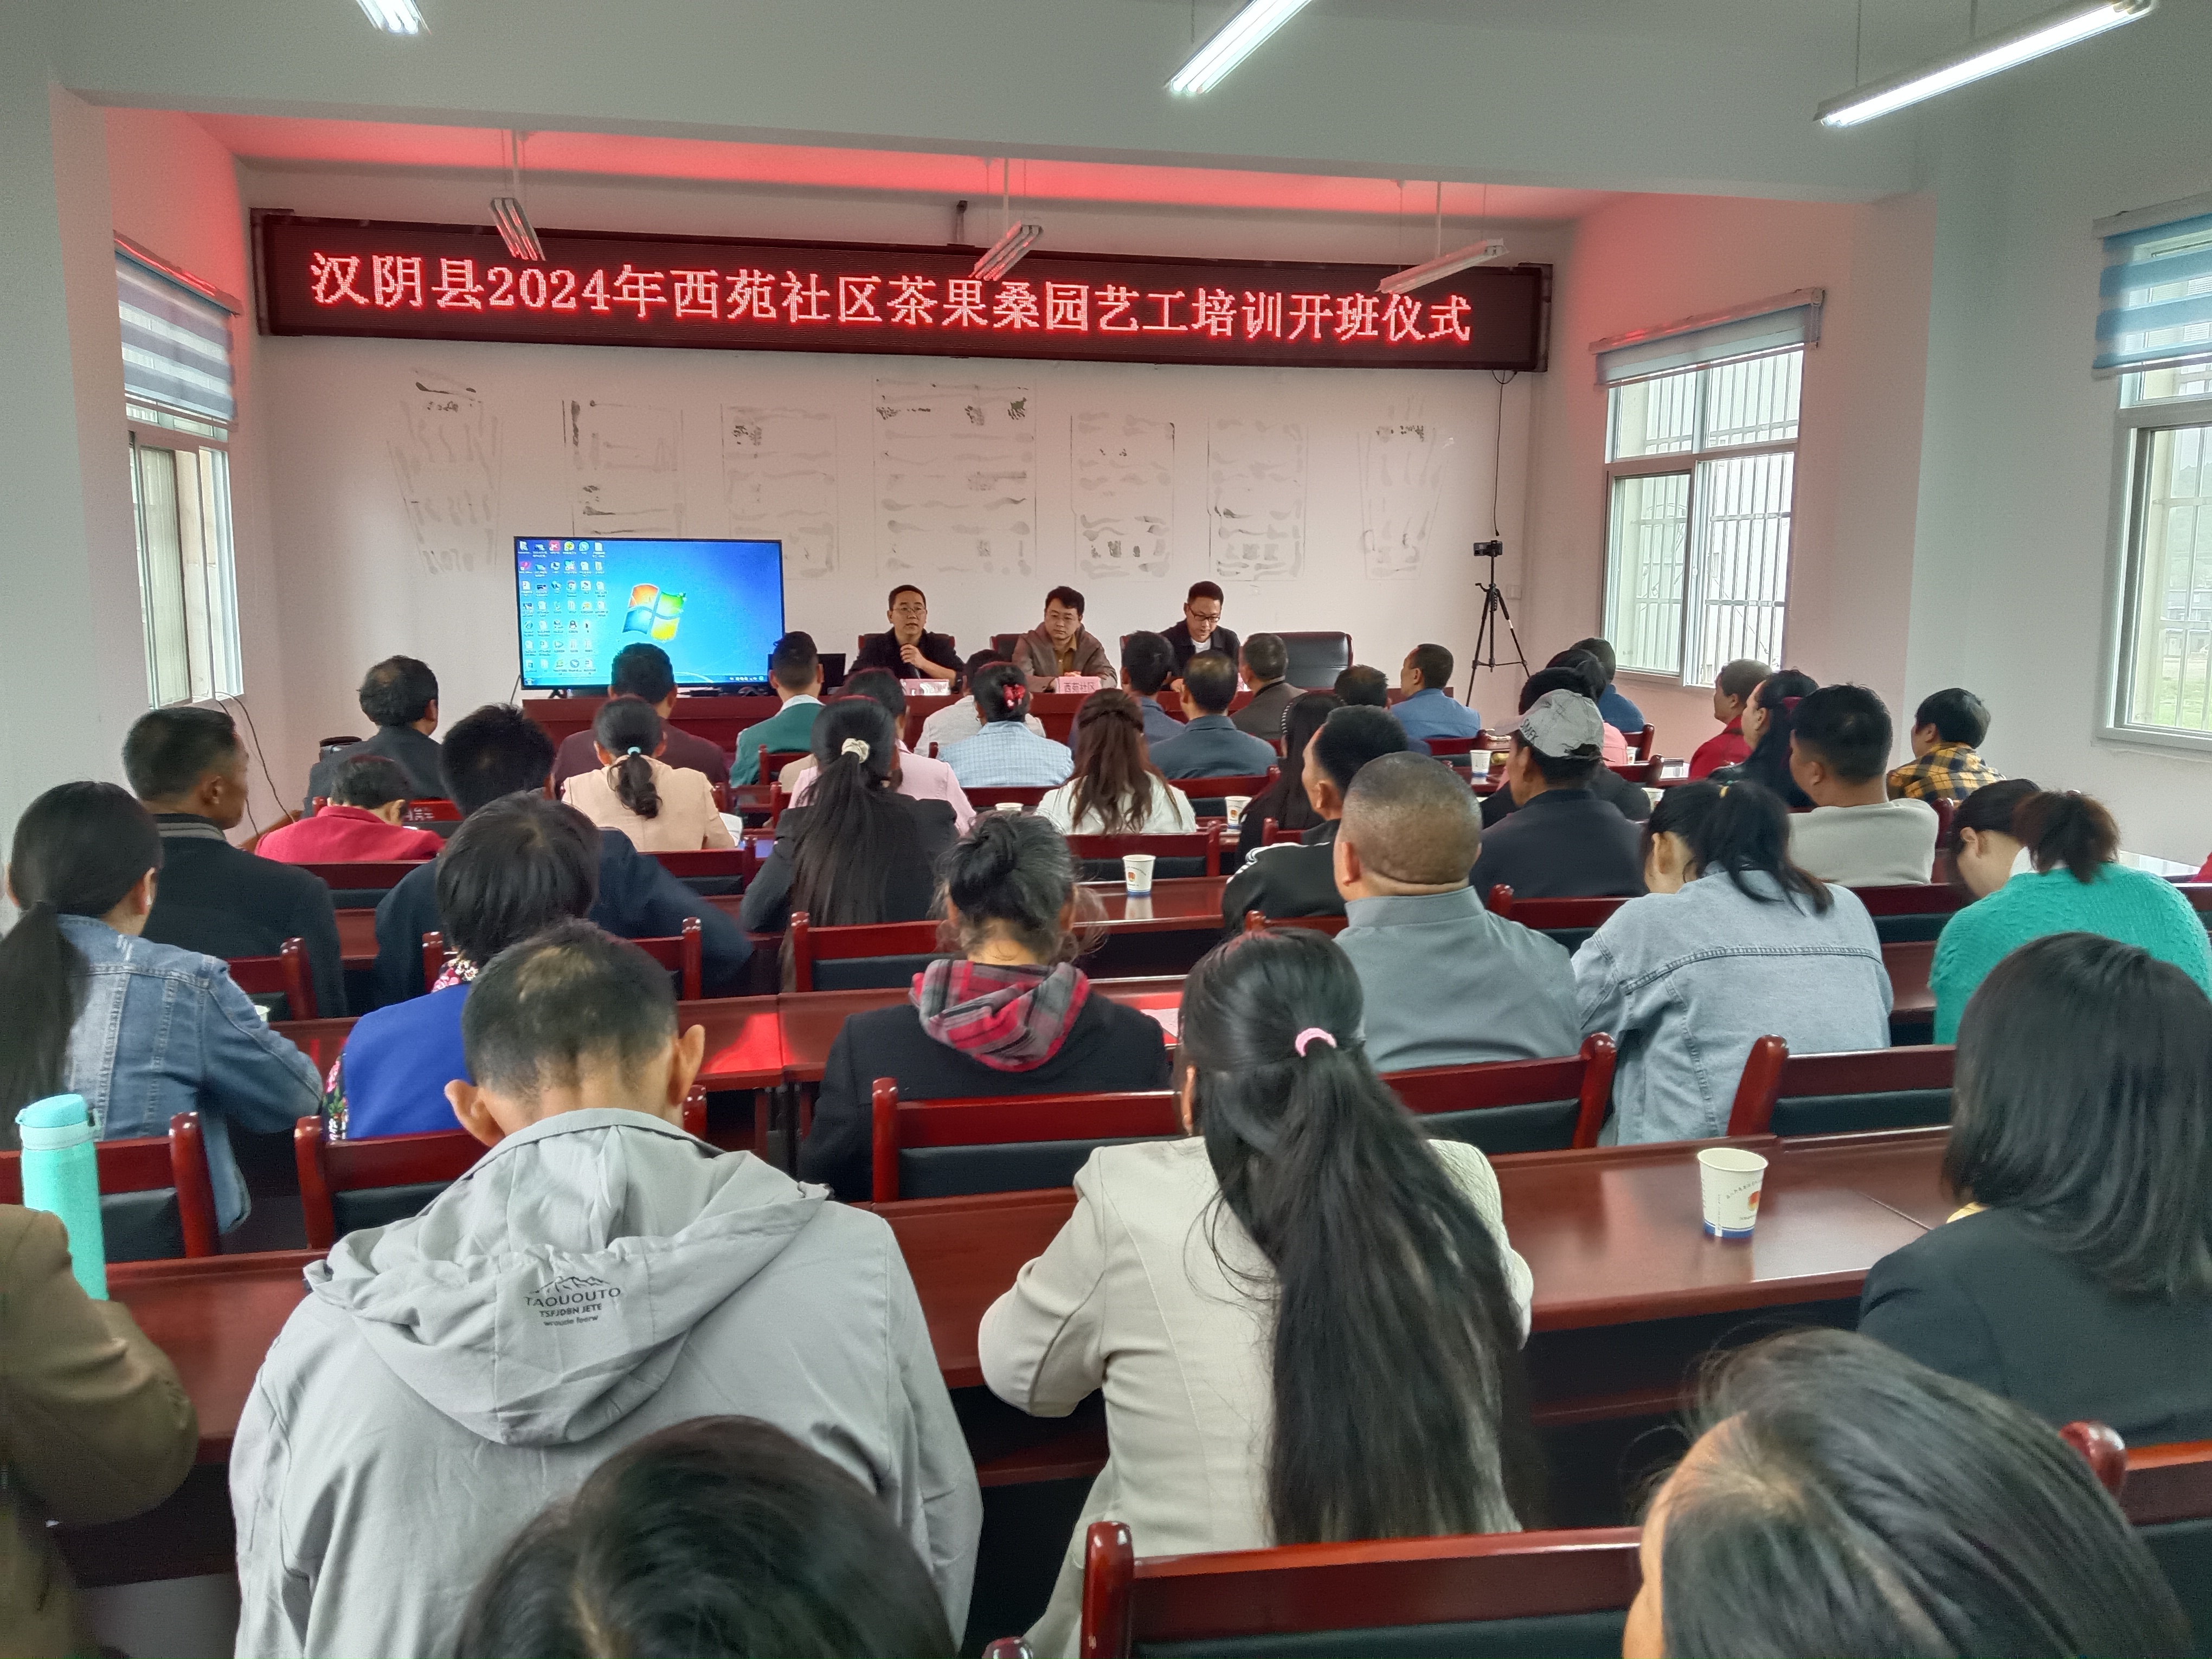 汉阴县城关镇西苑社区组织开展园艺职业技能培训活动